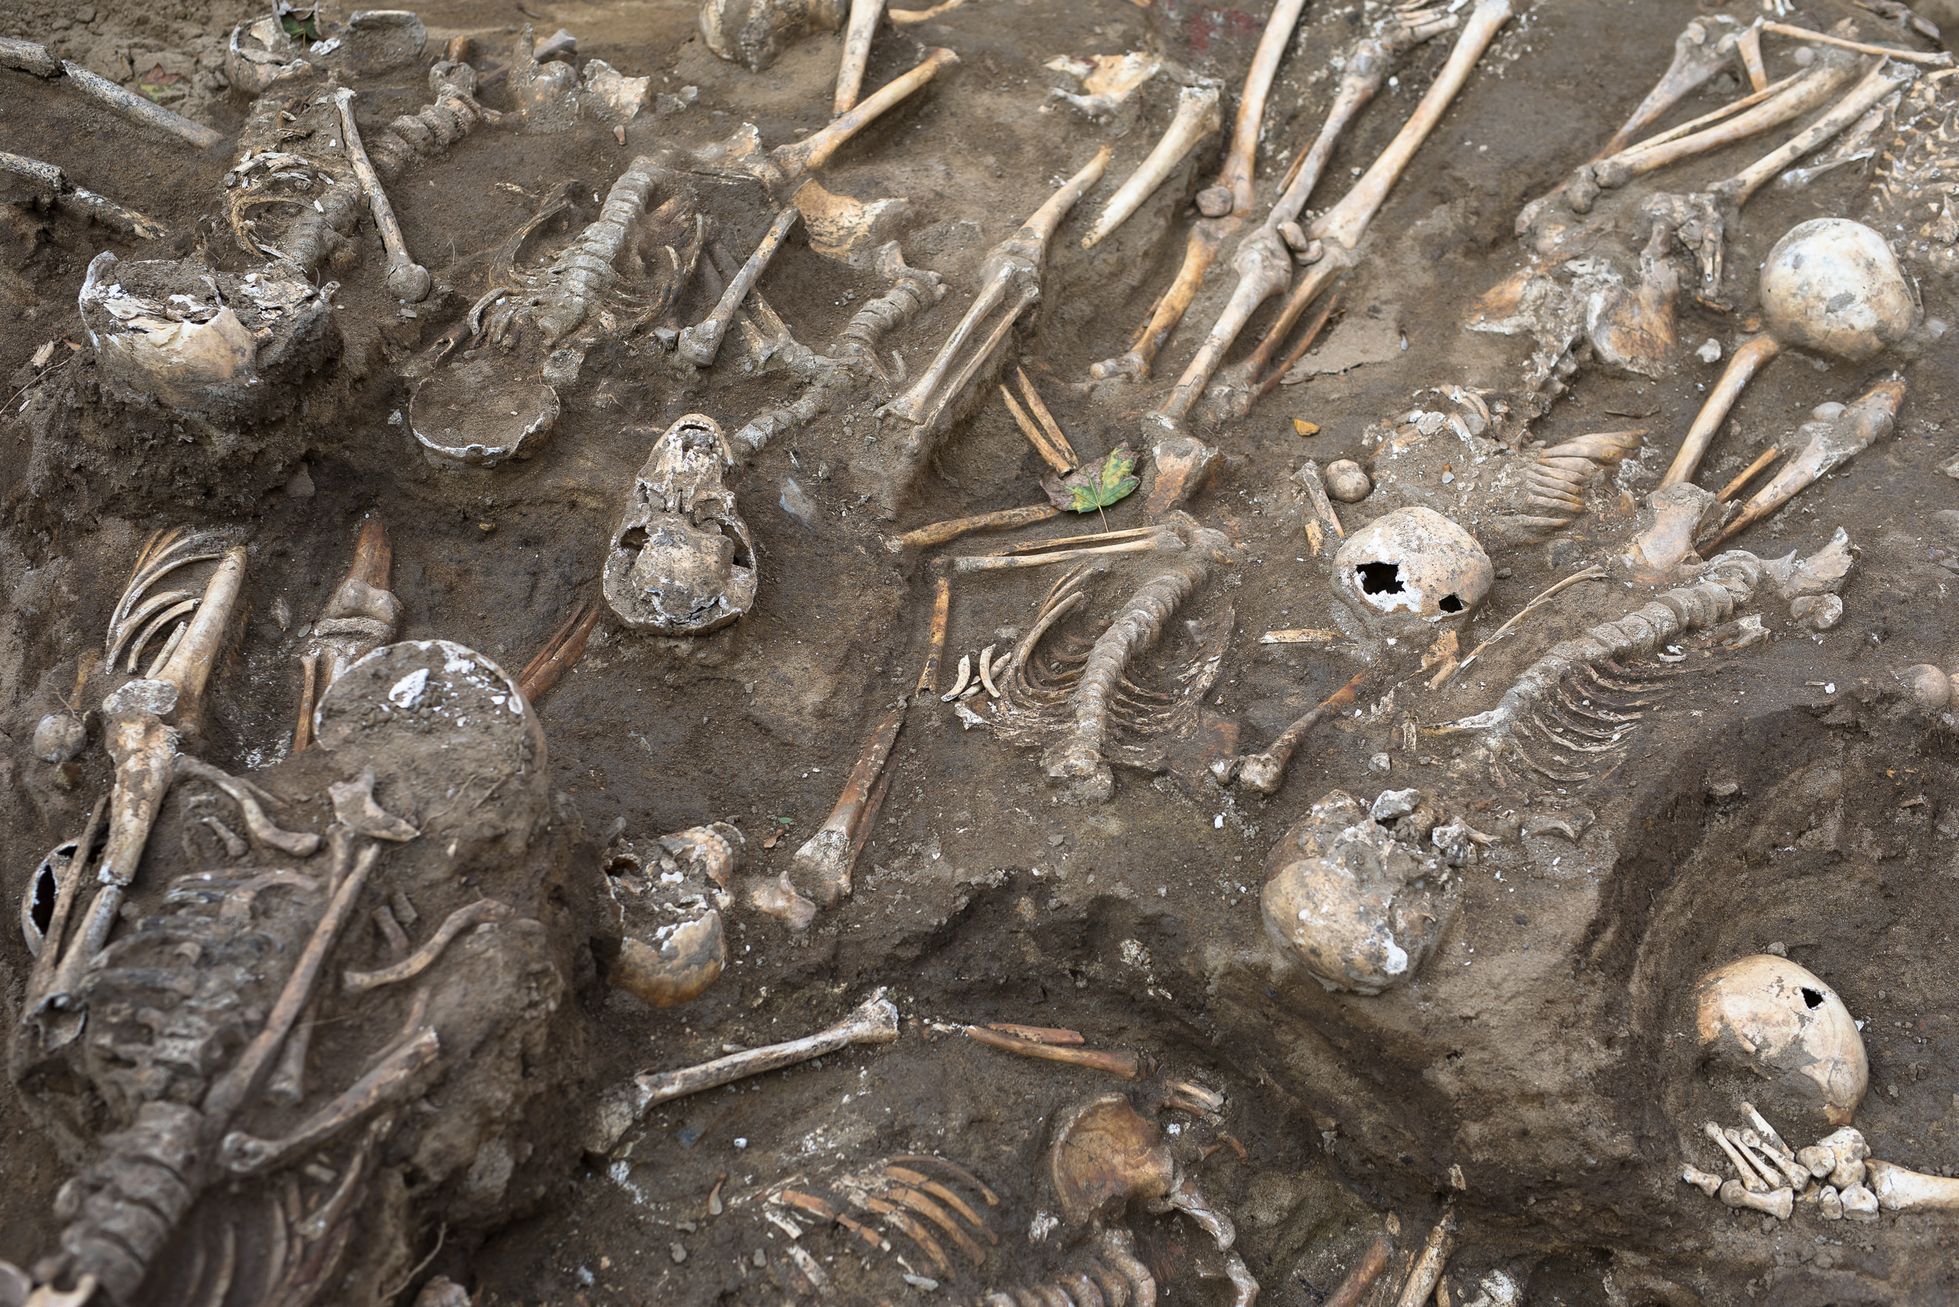 Archeologické vykopávky, Karlín, masový hrob, Vojenský hřbitov Karlín, kosti, archeologie, antropologie